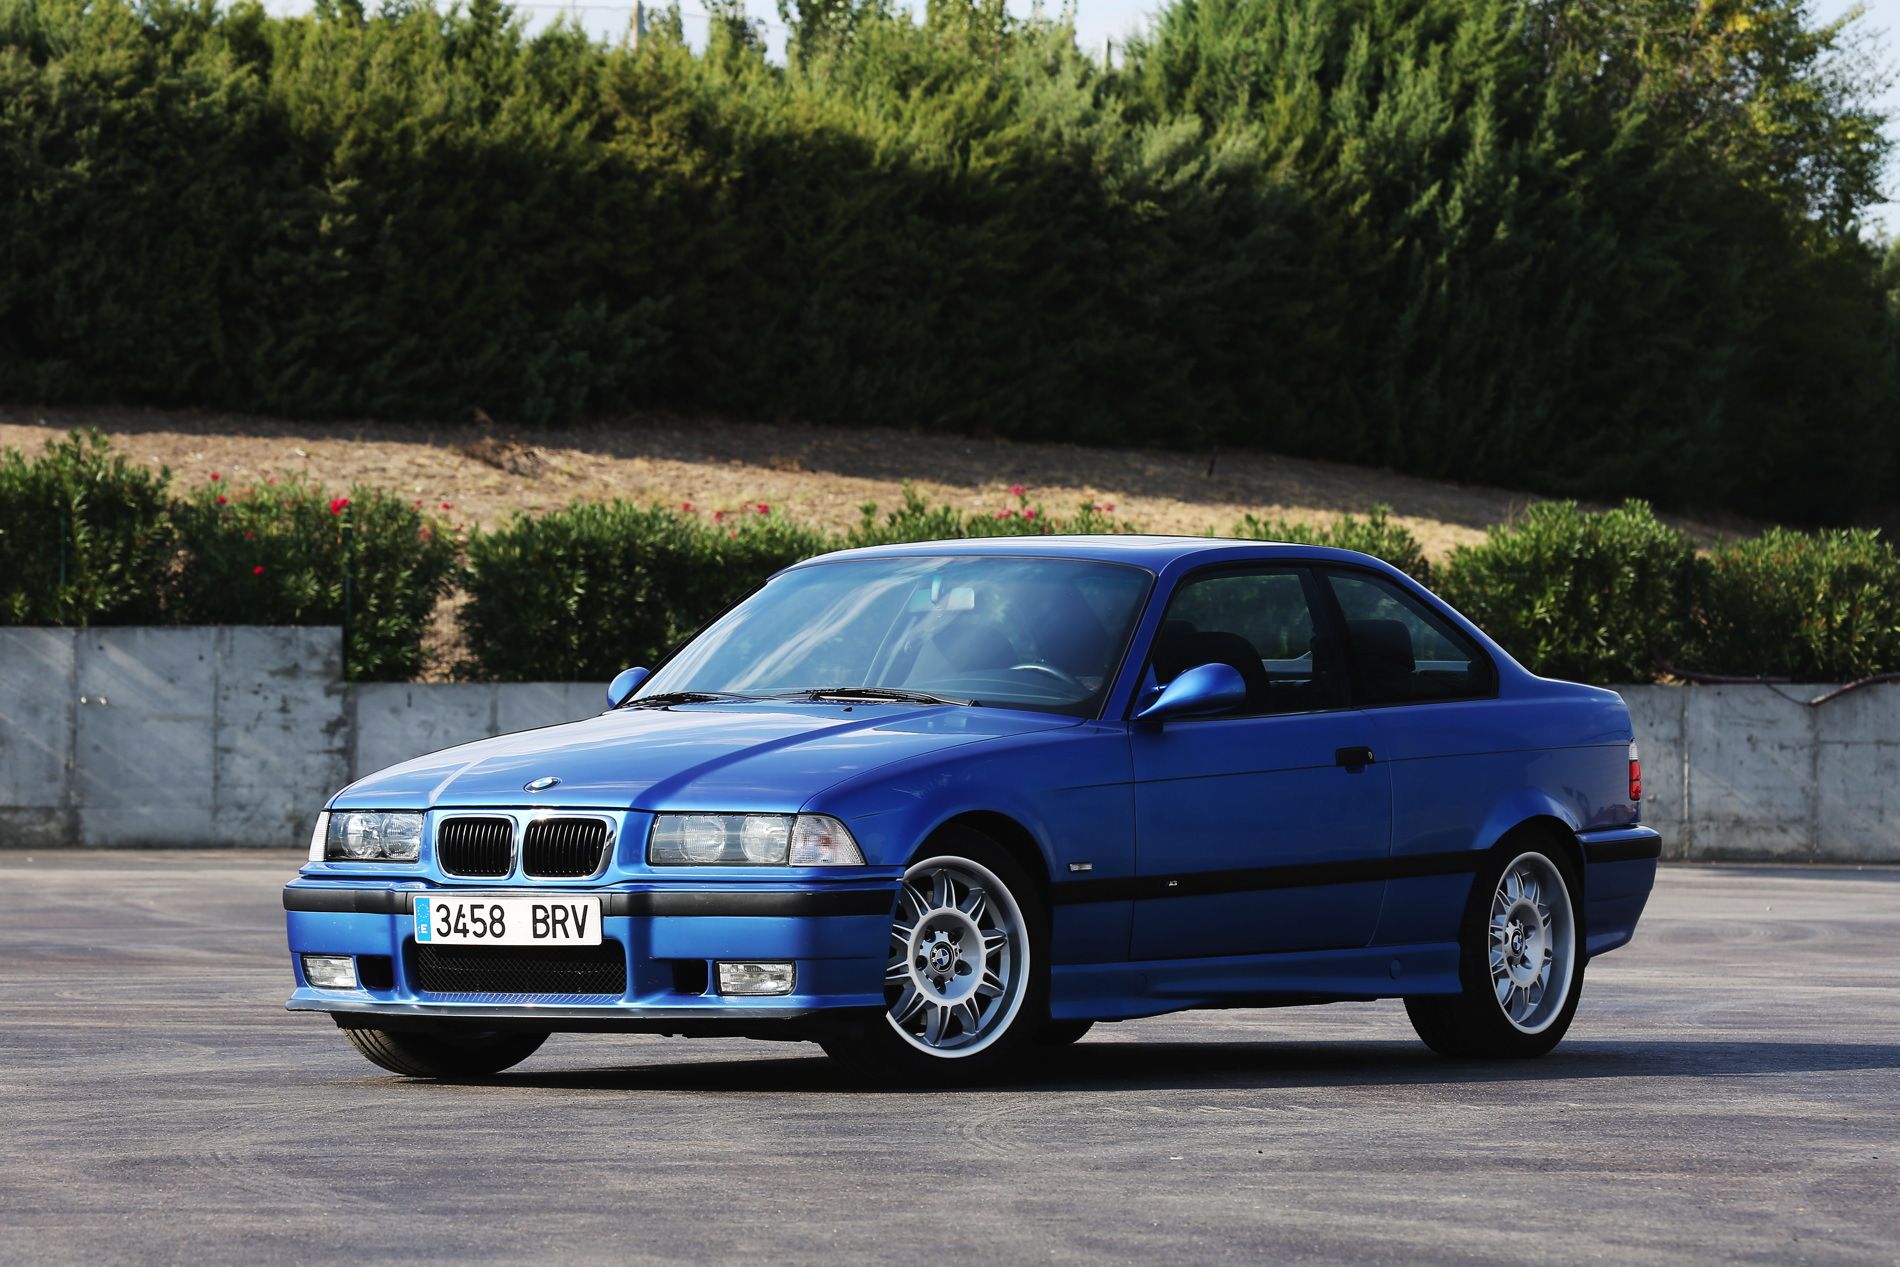 blue BMW powerful